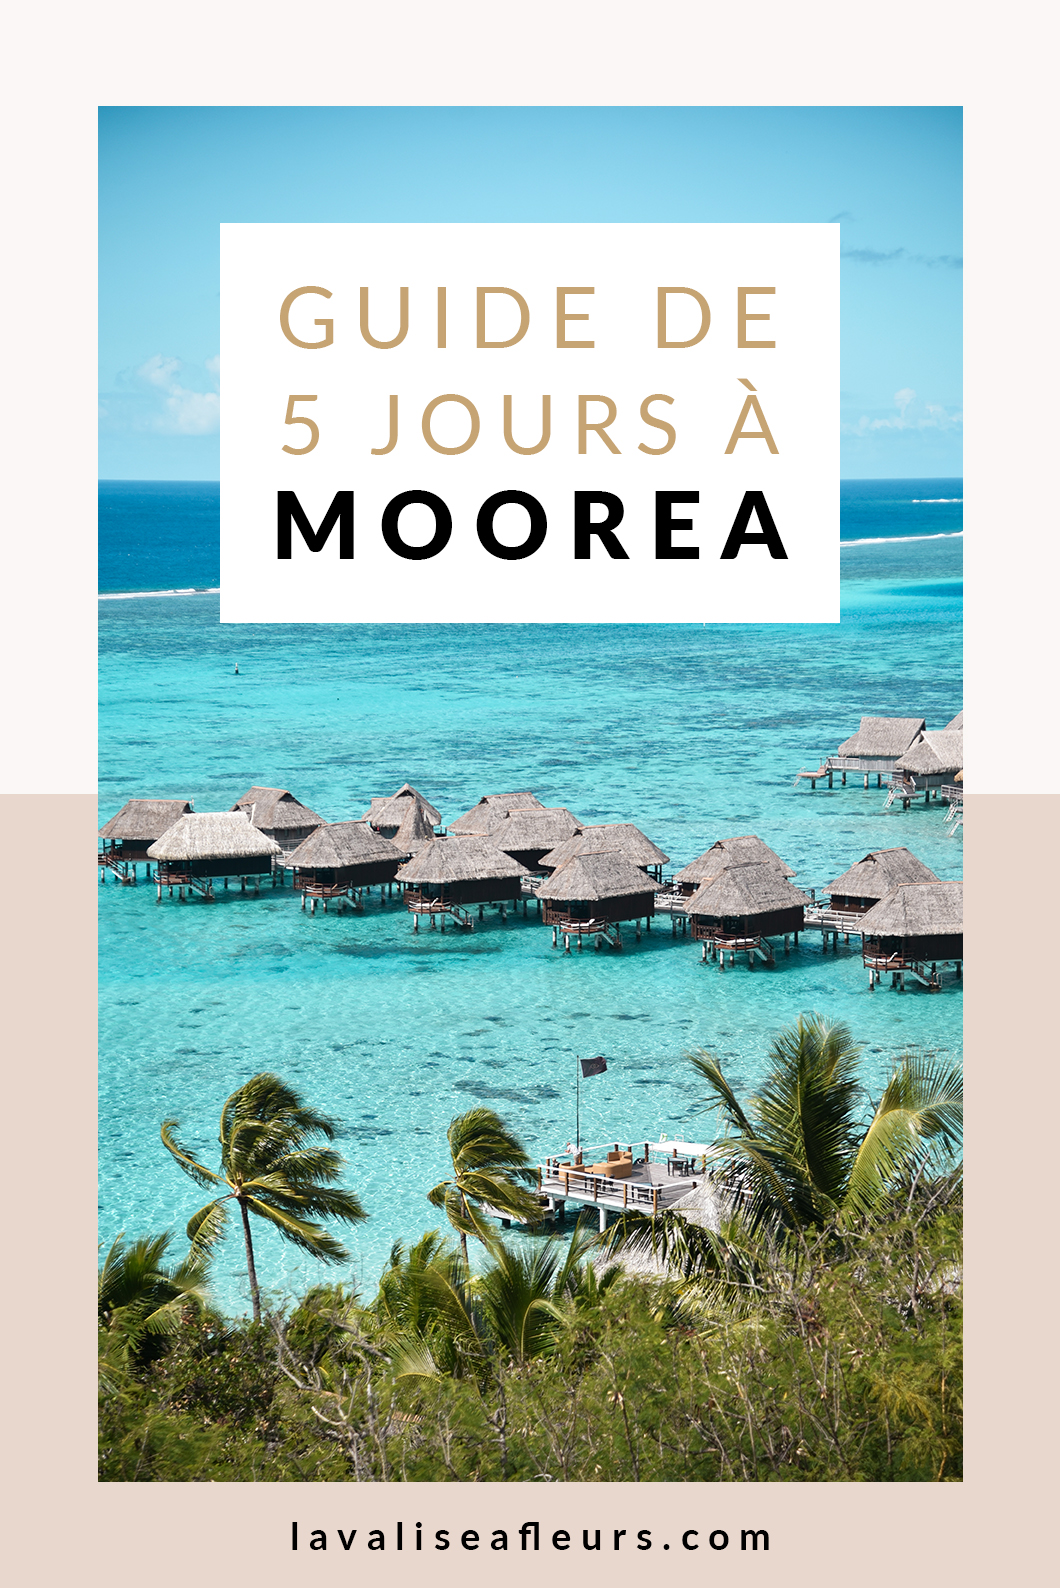 Guide de 5 jours à Moorea, voyage en Polynésie Française